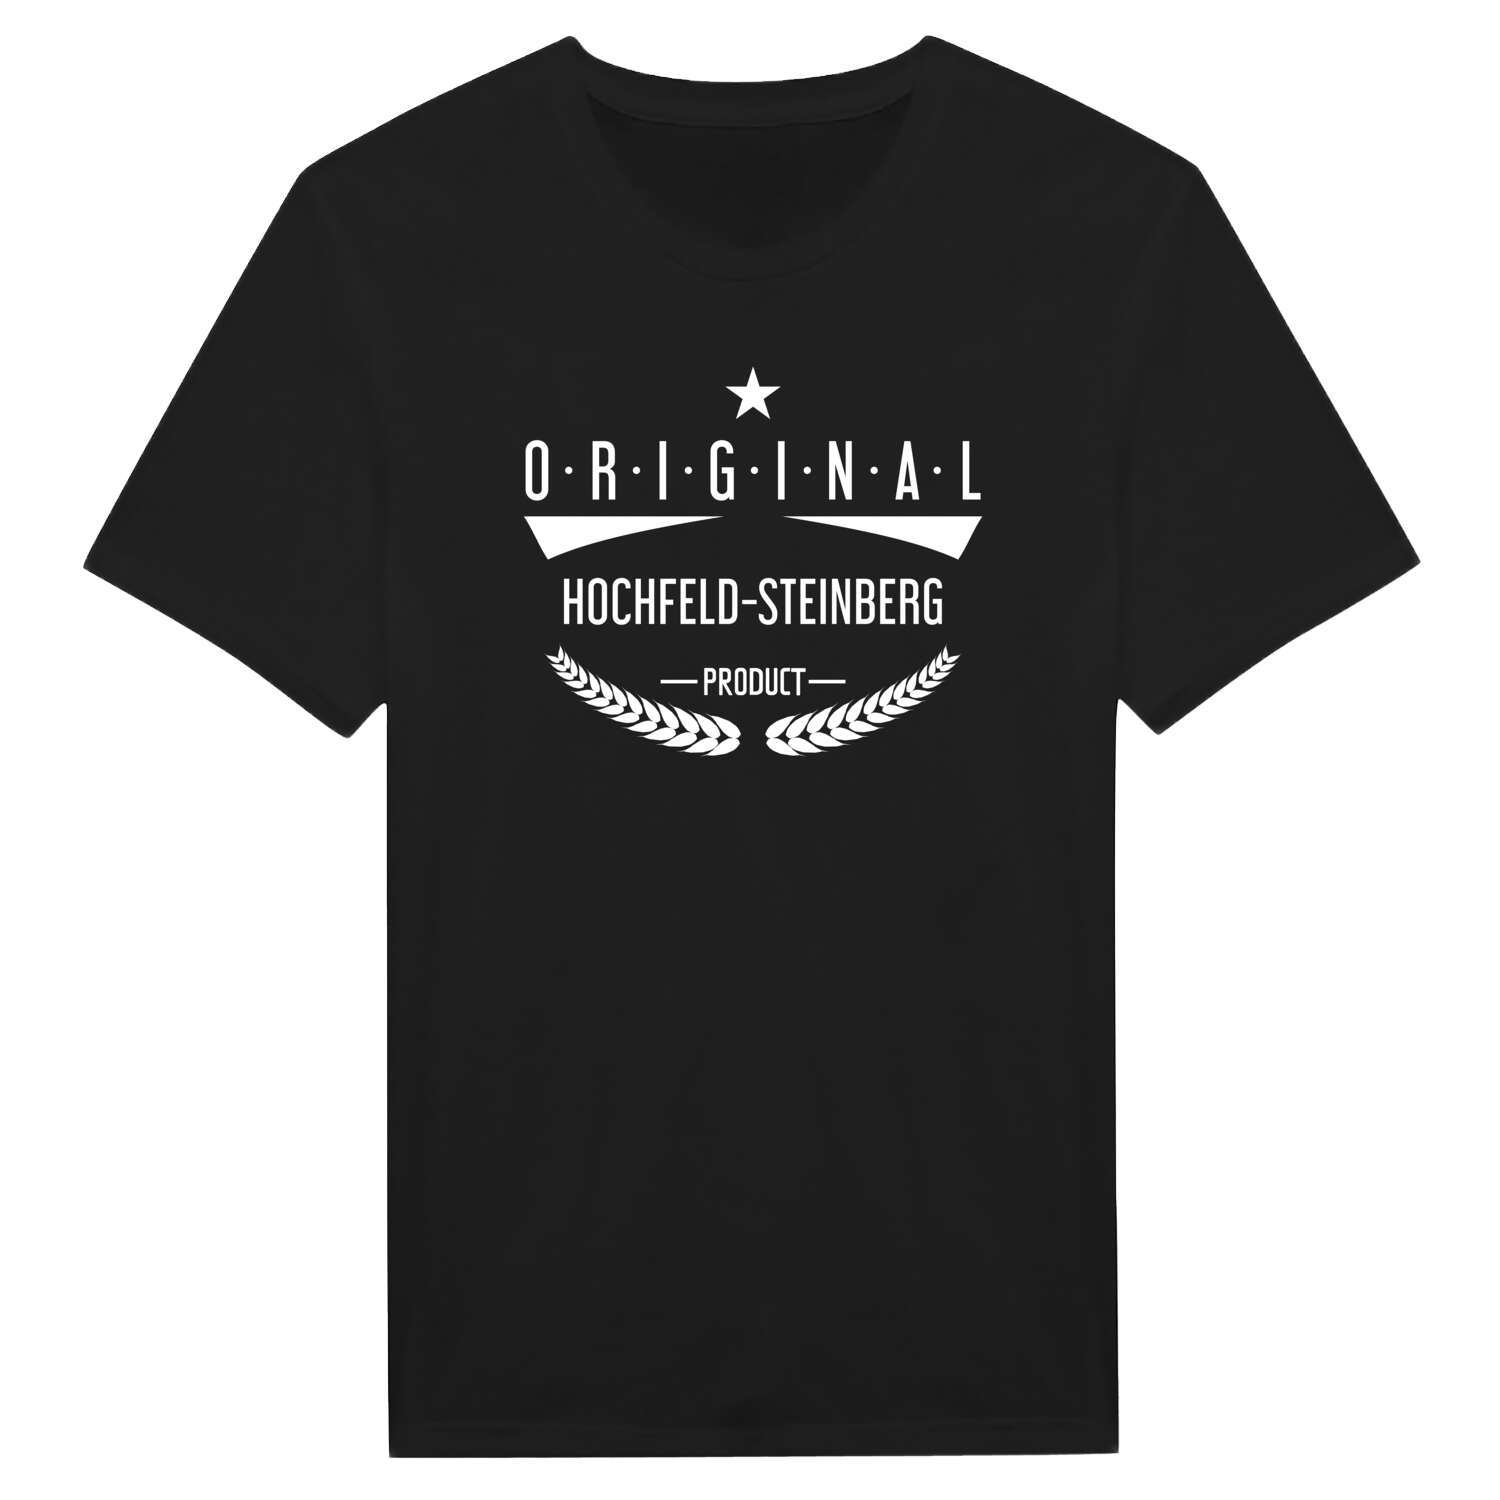 Hochfeld-Steinberg T-Shirt »Original Product«